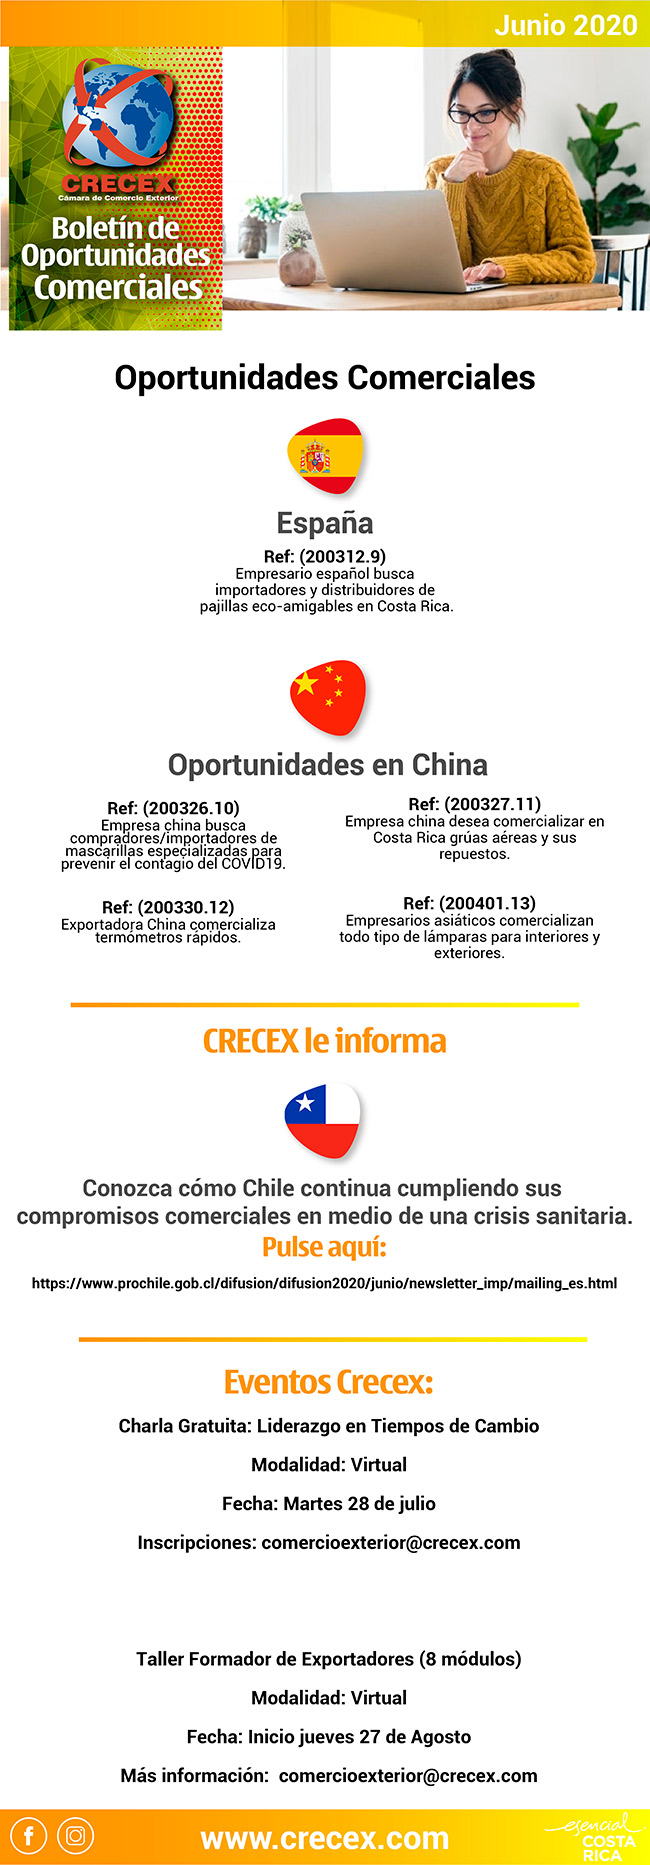 BOLETIN DE OPORTUNIDADES COMERCIALES NOVIEMBRE 2019 - CRECEX